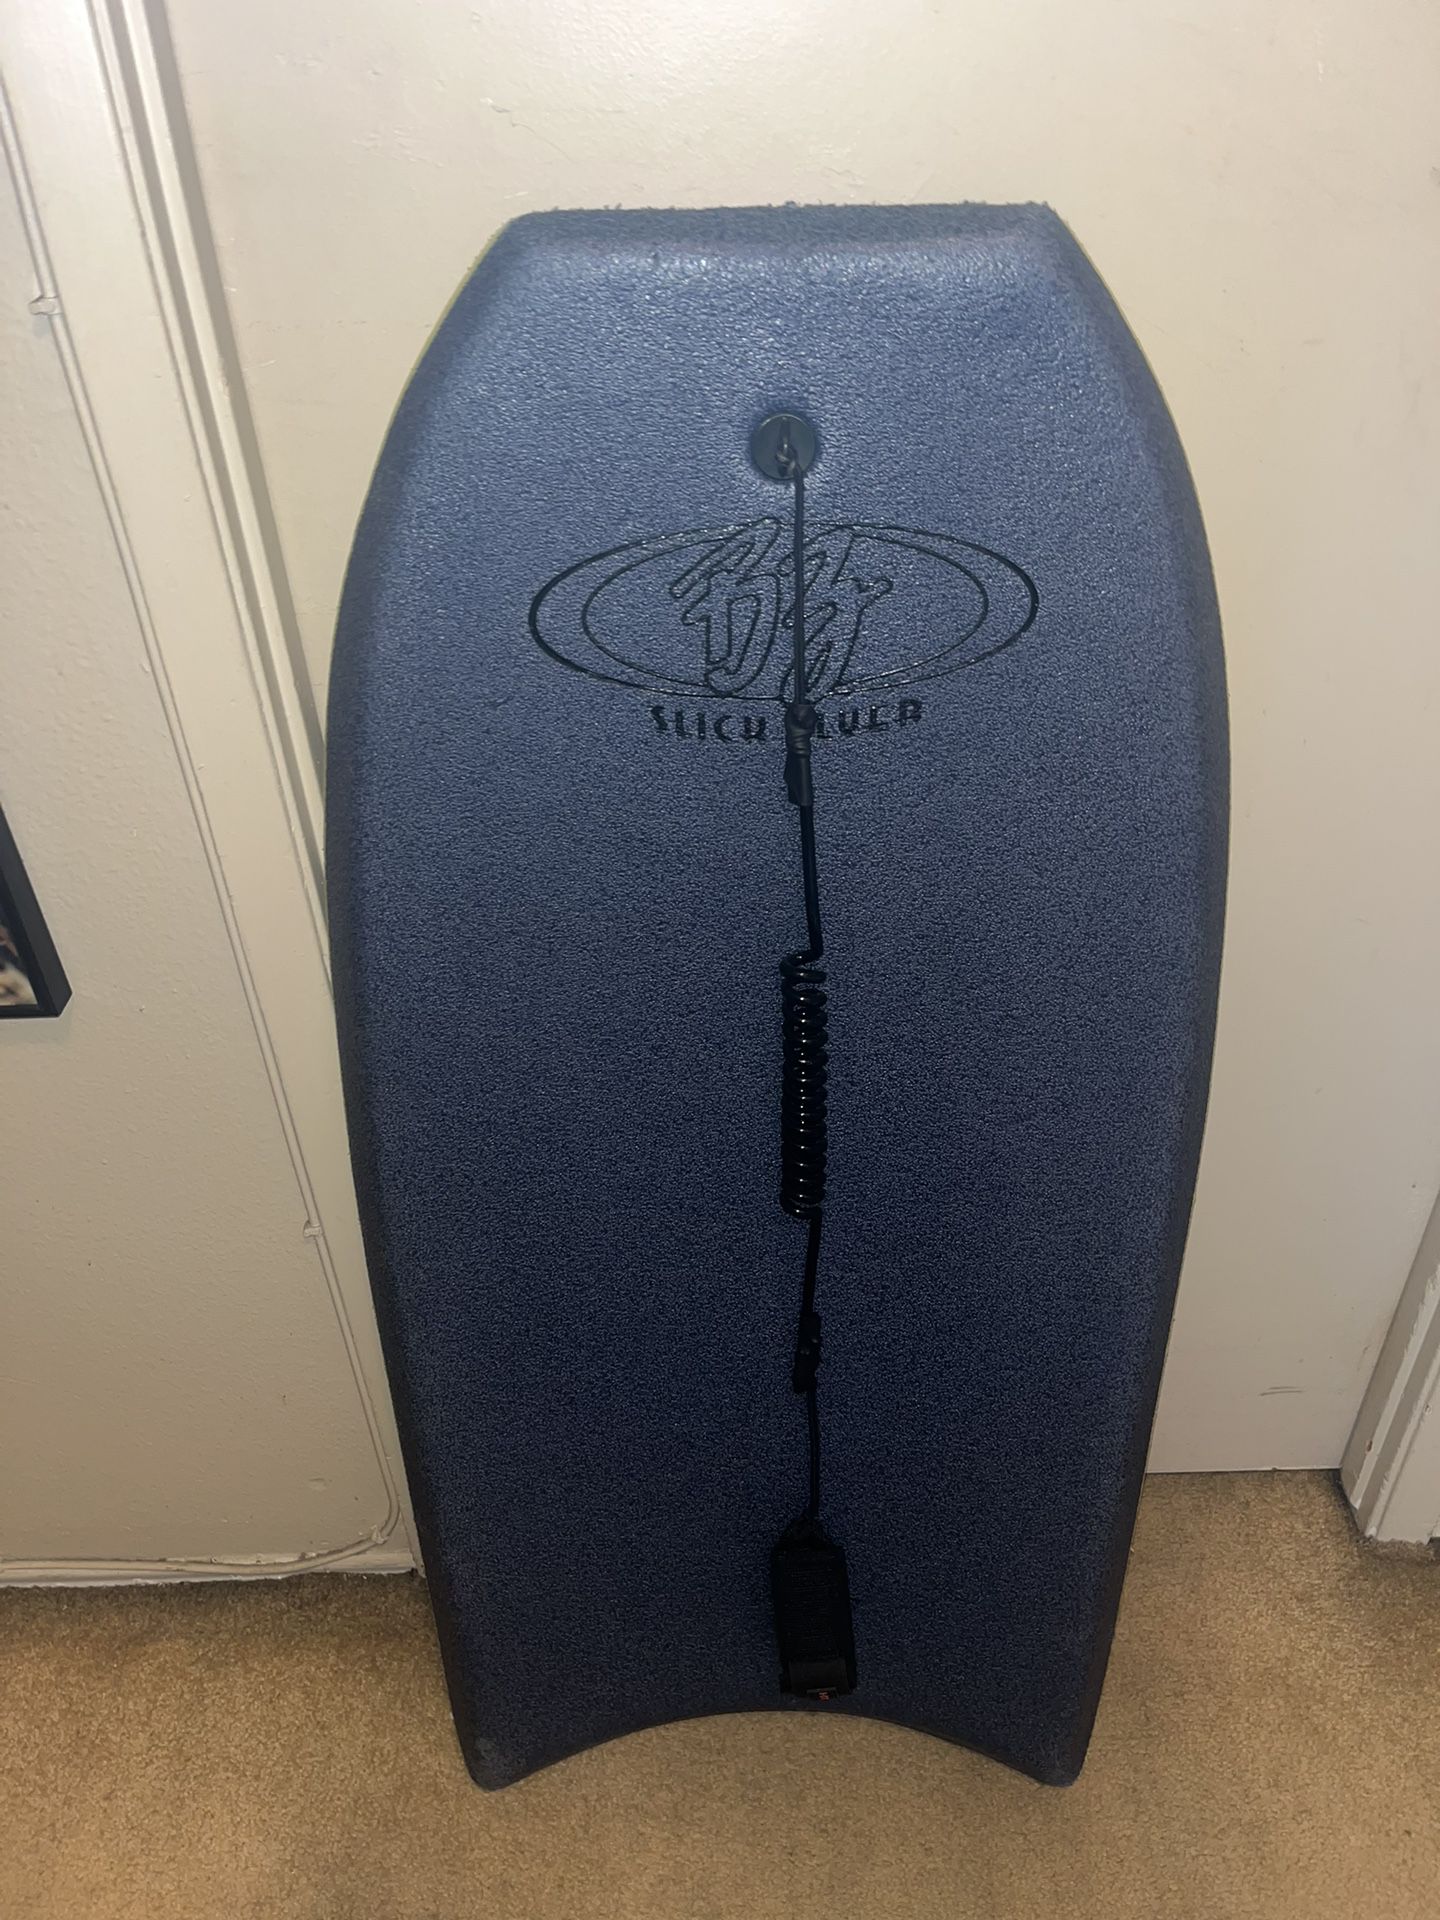 Vintage 41” BZ Slick Flyer Boogie board Bodyboard Body Board